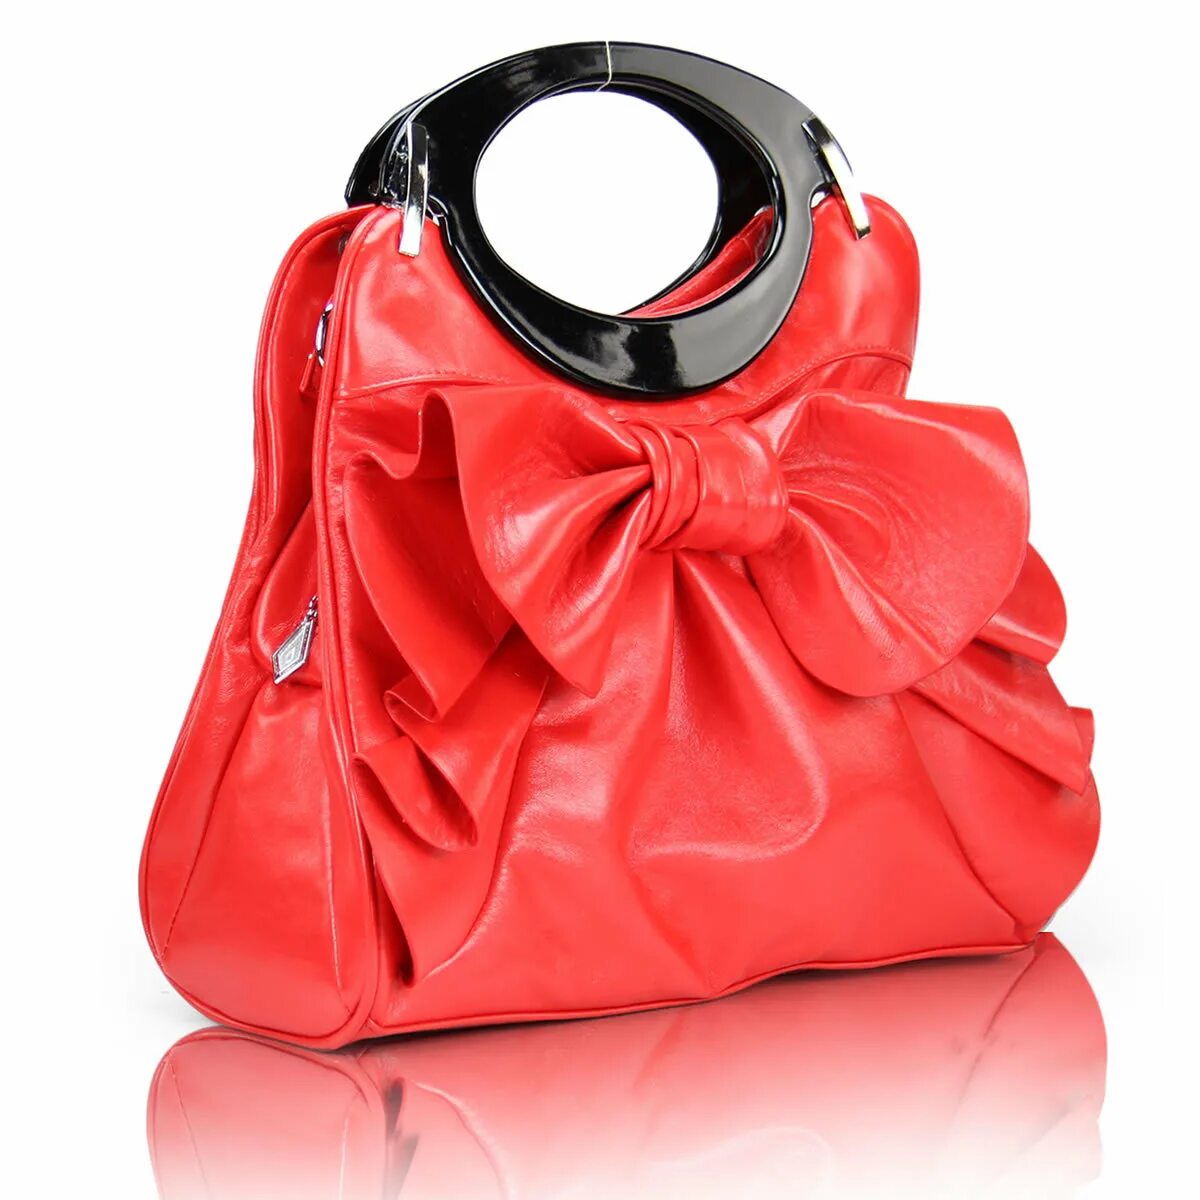 Мешок сд. Женская кожаная сумка розовая. Сумка женская розовая из искусственной кожи. Сумка черная с красным. Женская романтичная сумка.